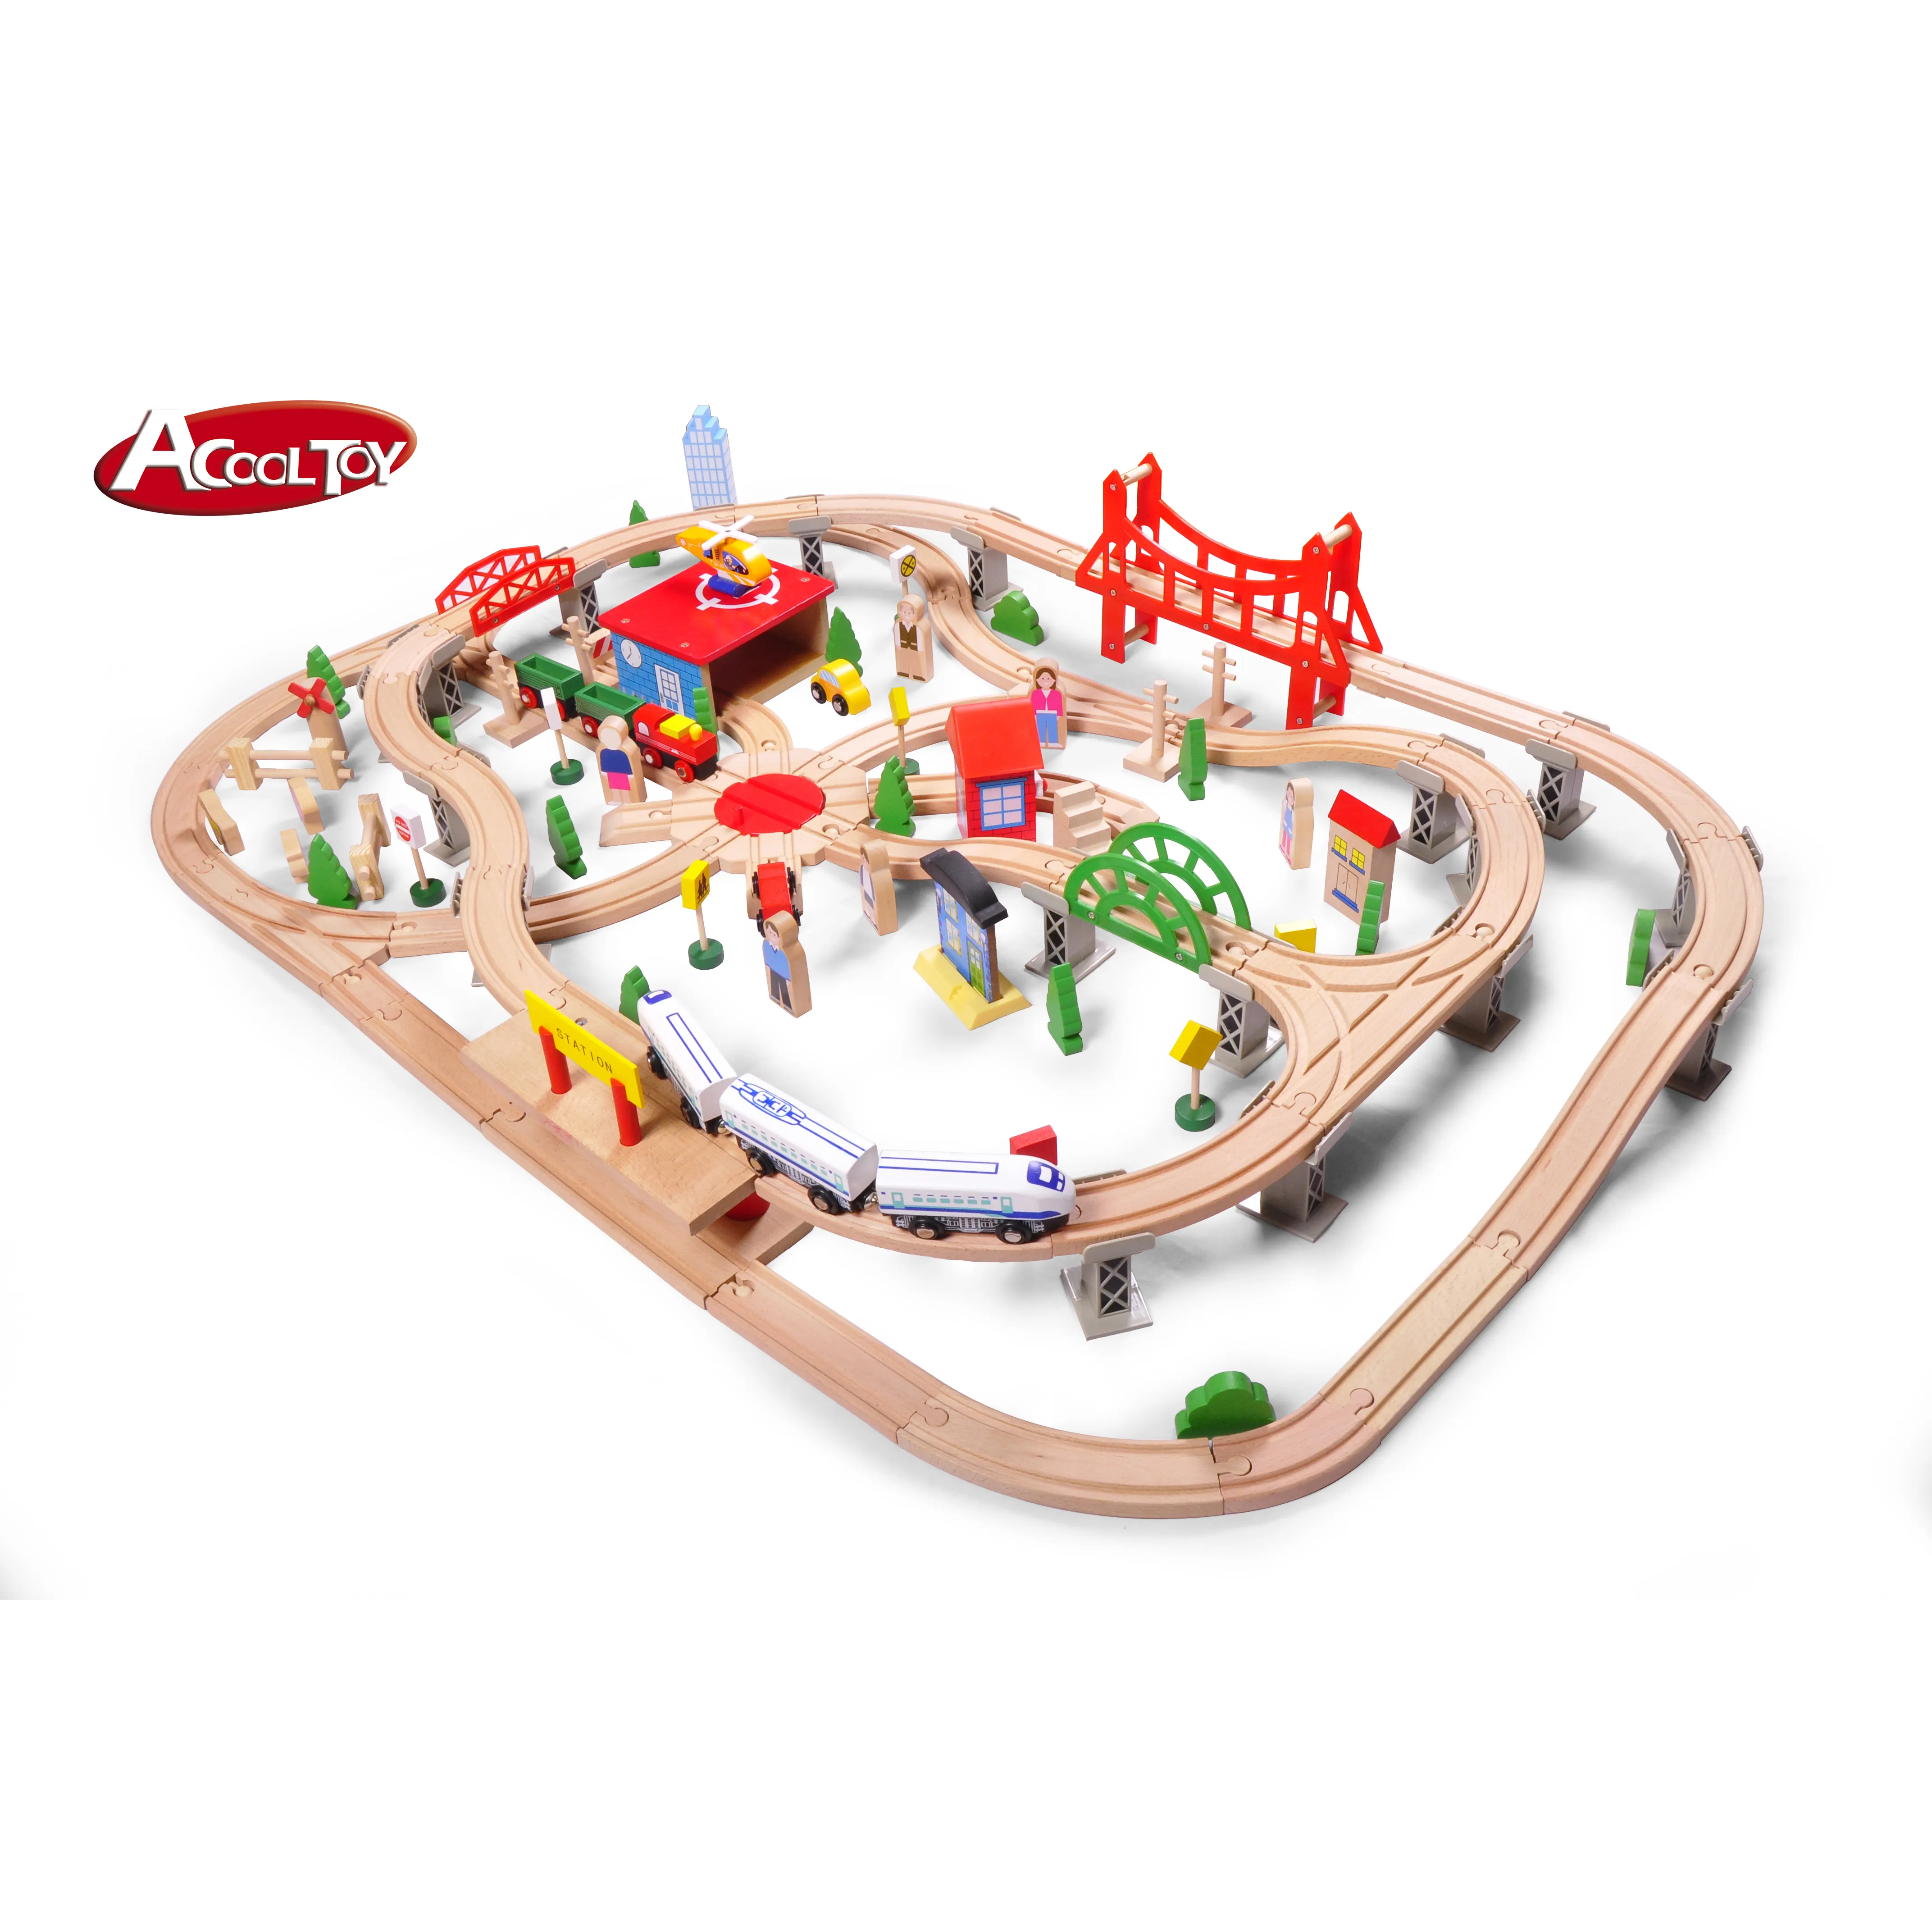 130 pezzi di treni in legno DELUXE Track Toys Set di treni elettrici Slot Toy